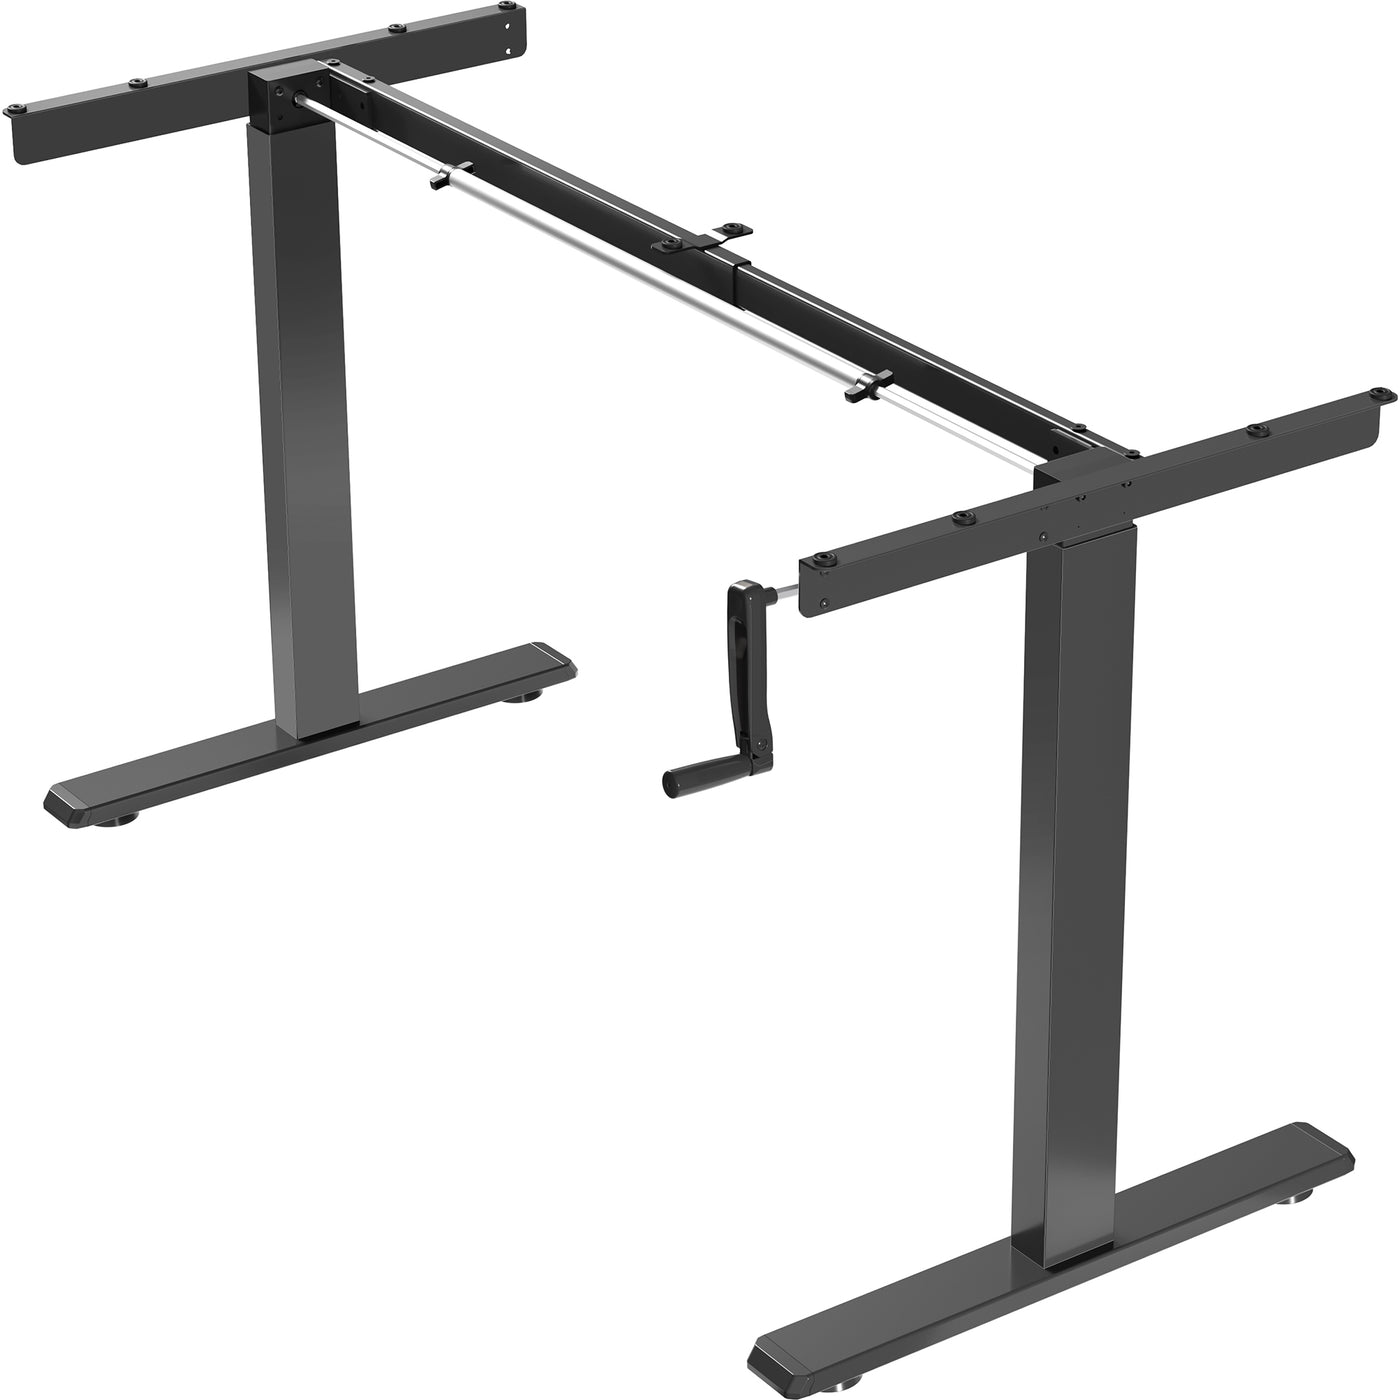 Manual Height Adjustable Stand Up Desk Frame Crank Ergonomic System